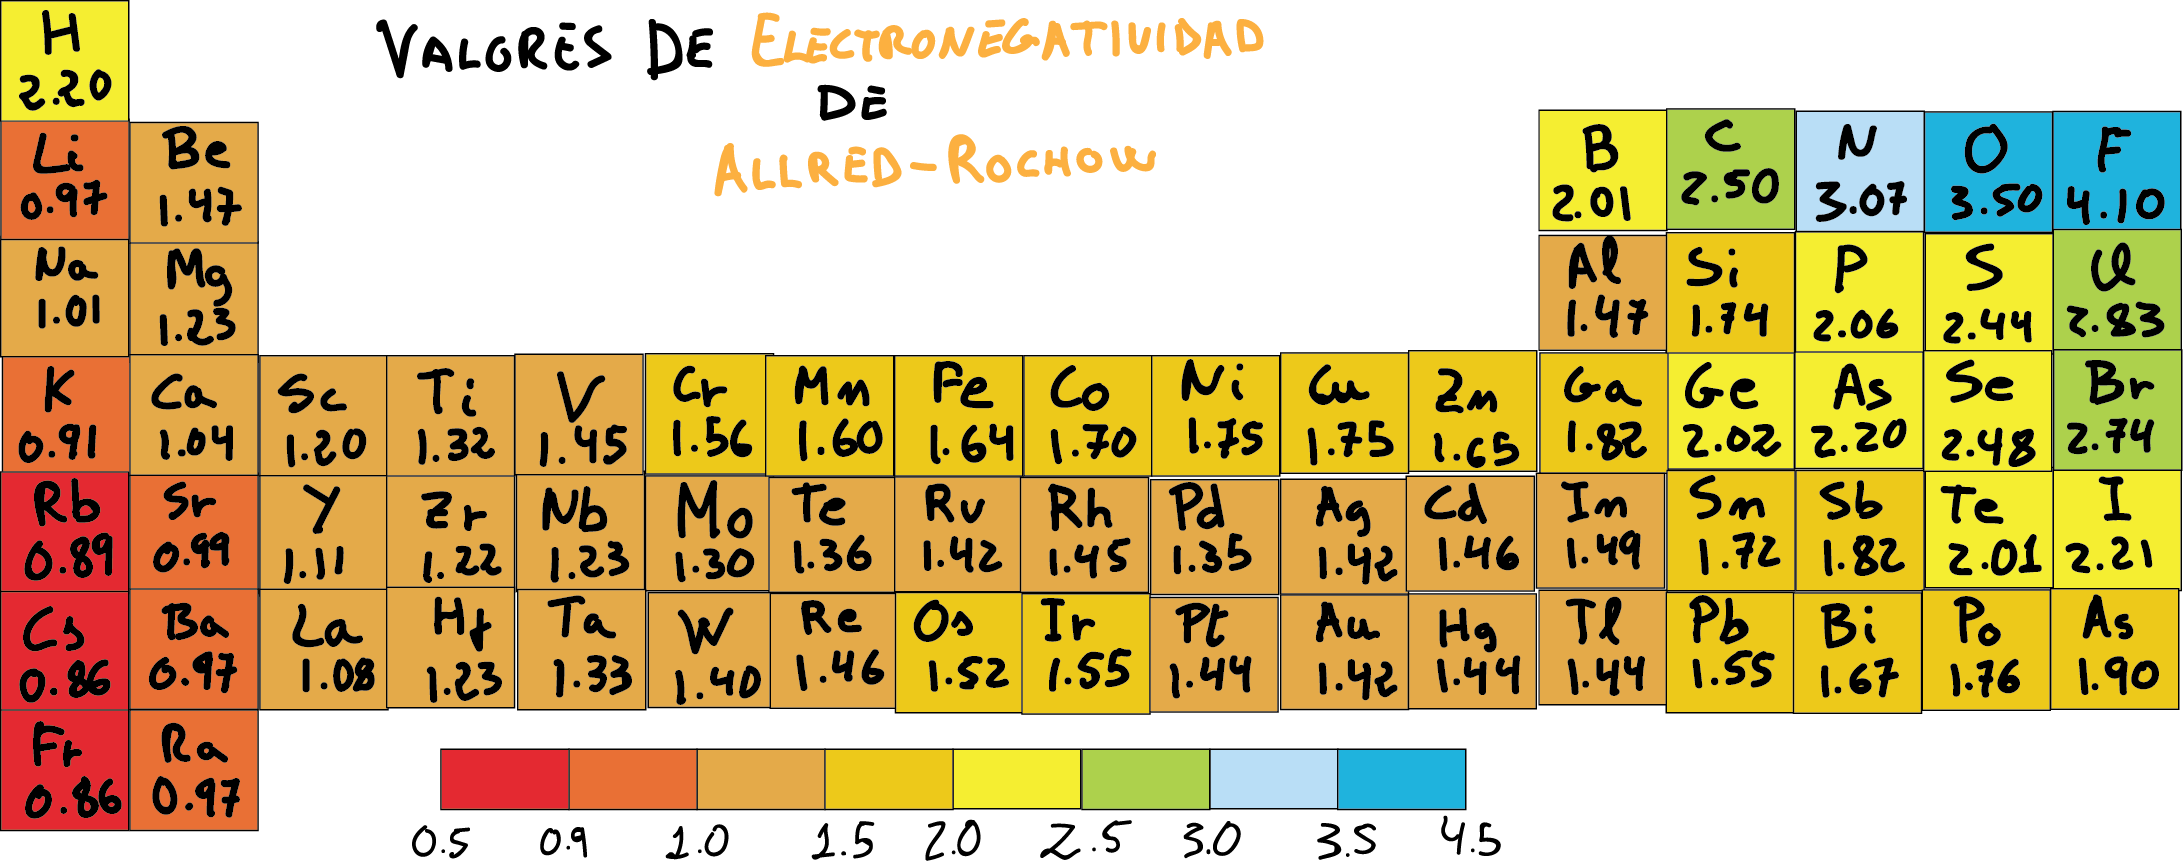 Tabla de electronegatividad de Allred-Rochow en la Tabla Periódica